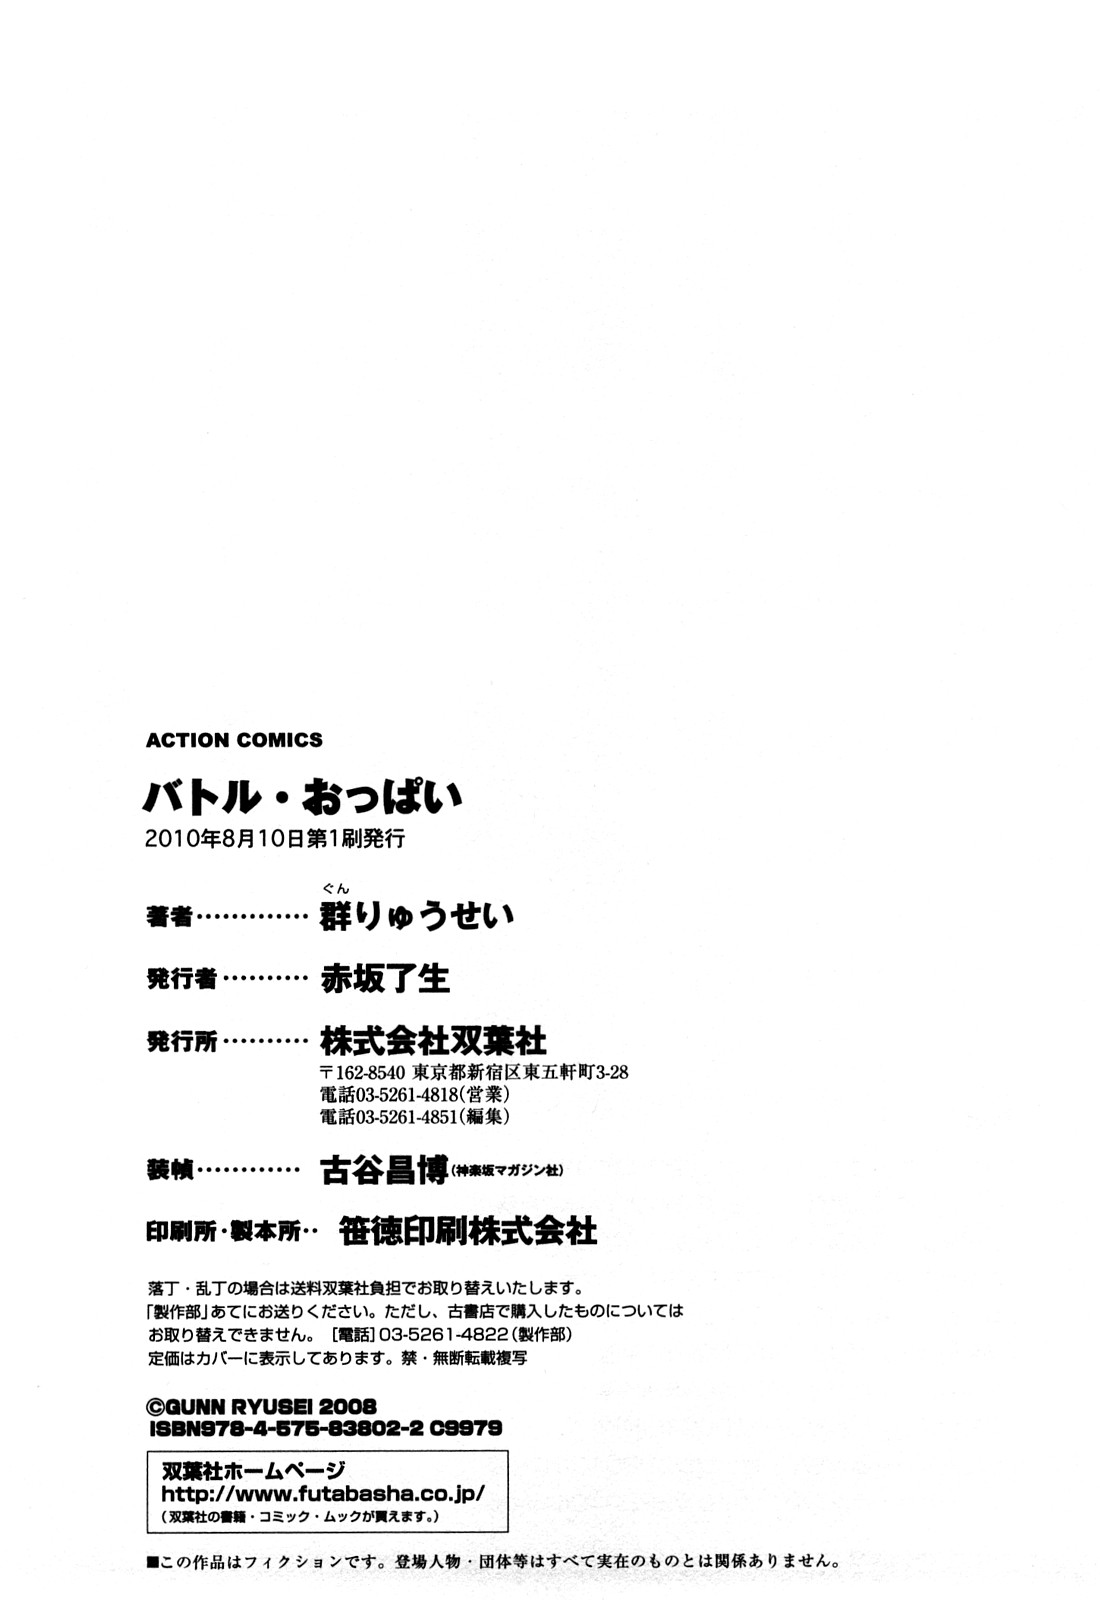 [Gunn Ryusei] Battle Oppai [群りゅうせい] バトル・おっぱい [10-08-10]